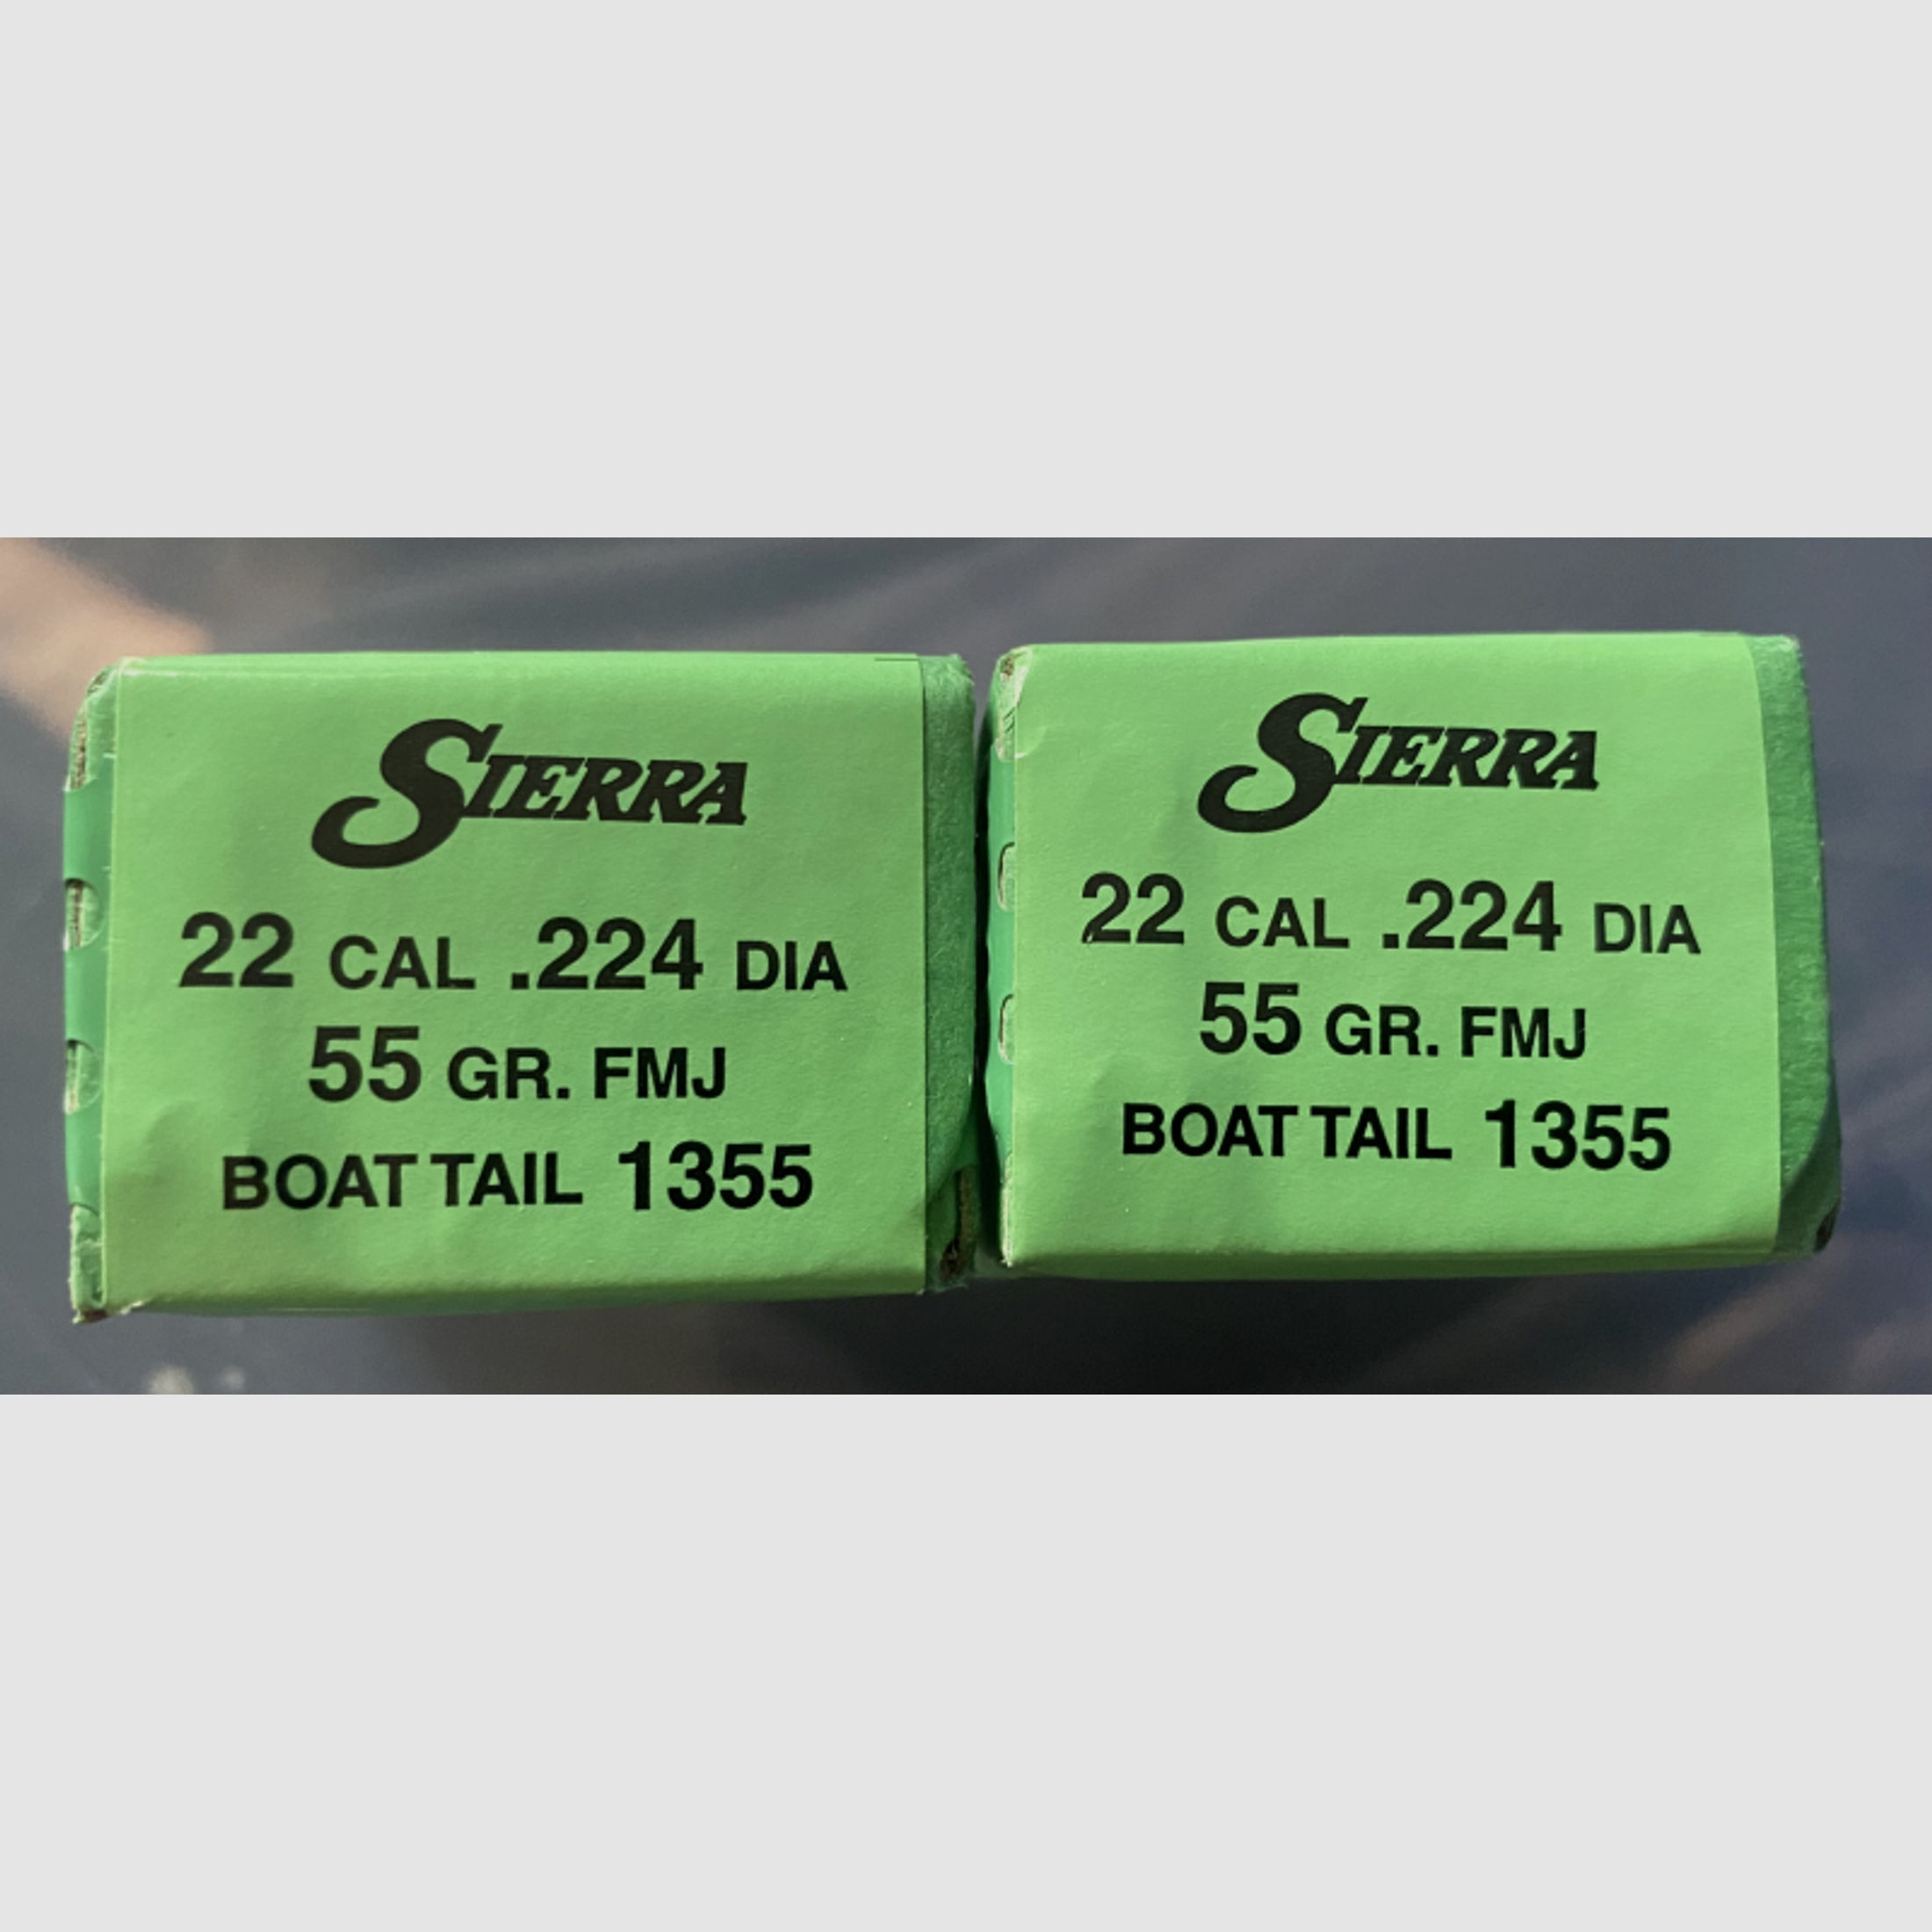 200 Geschosse Sierra .22 / 224 DIA 55 gr. FMJ Boat Tail 1355 Riefle Bullets